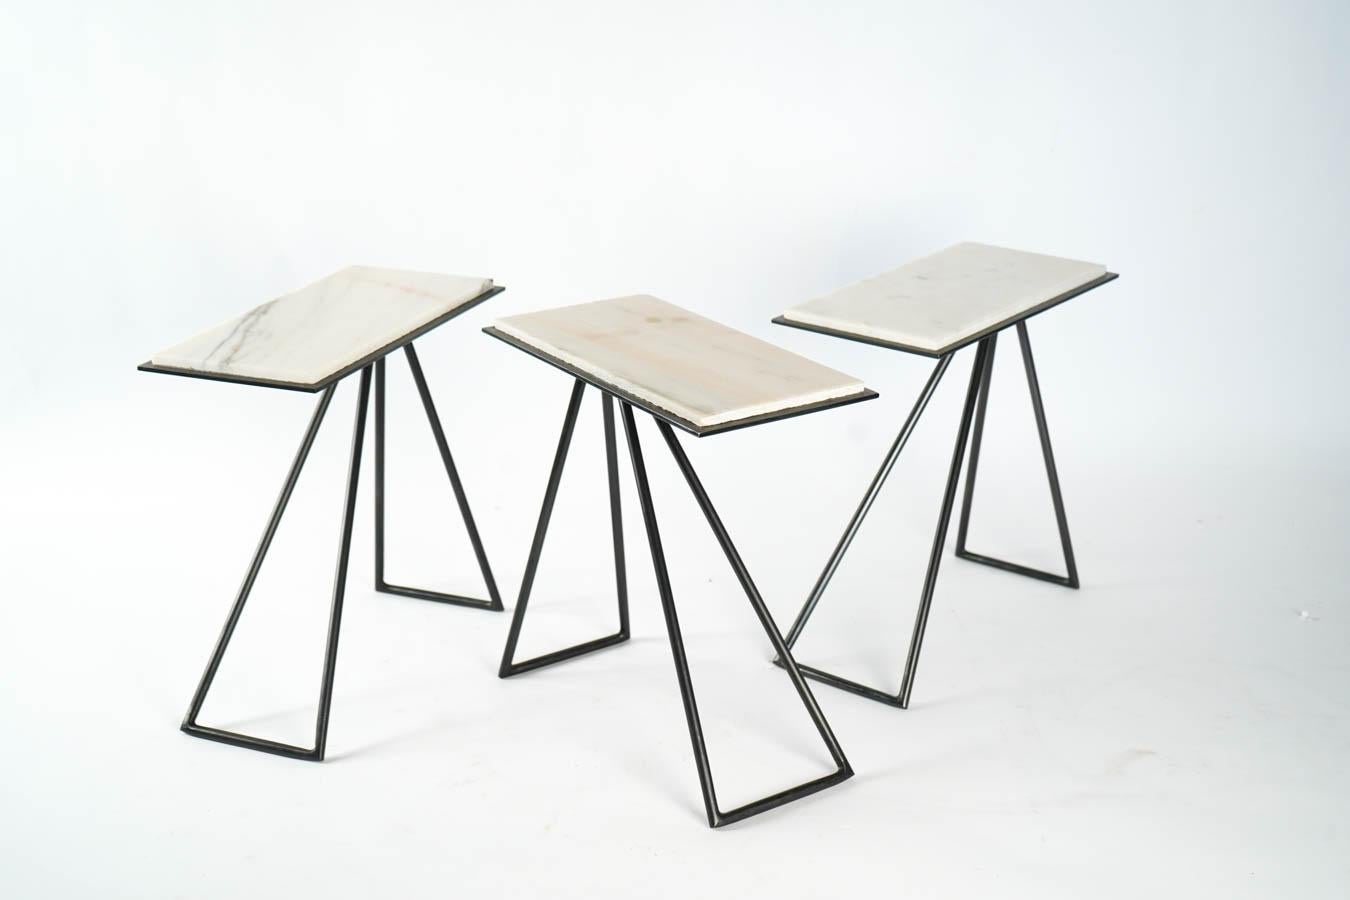 Tables basses modulaires au design contemporain par Anouchka Potdevin. En acier inoxydable et en marbre. Commande personnalisée dans d'autres couleurs.
Mesures : H 34cm, L 32cm, P 17cm.